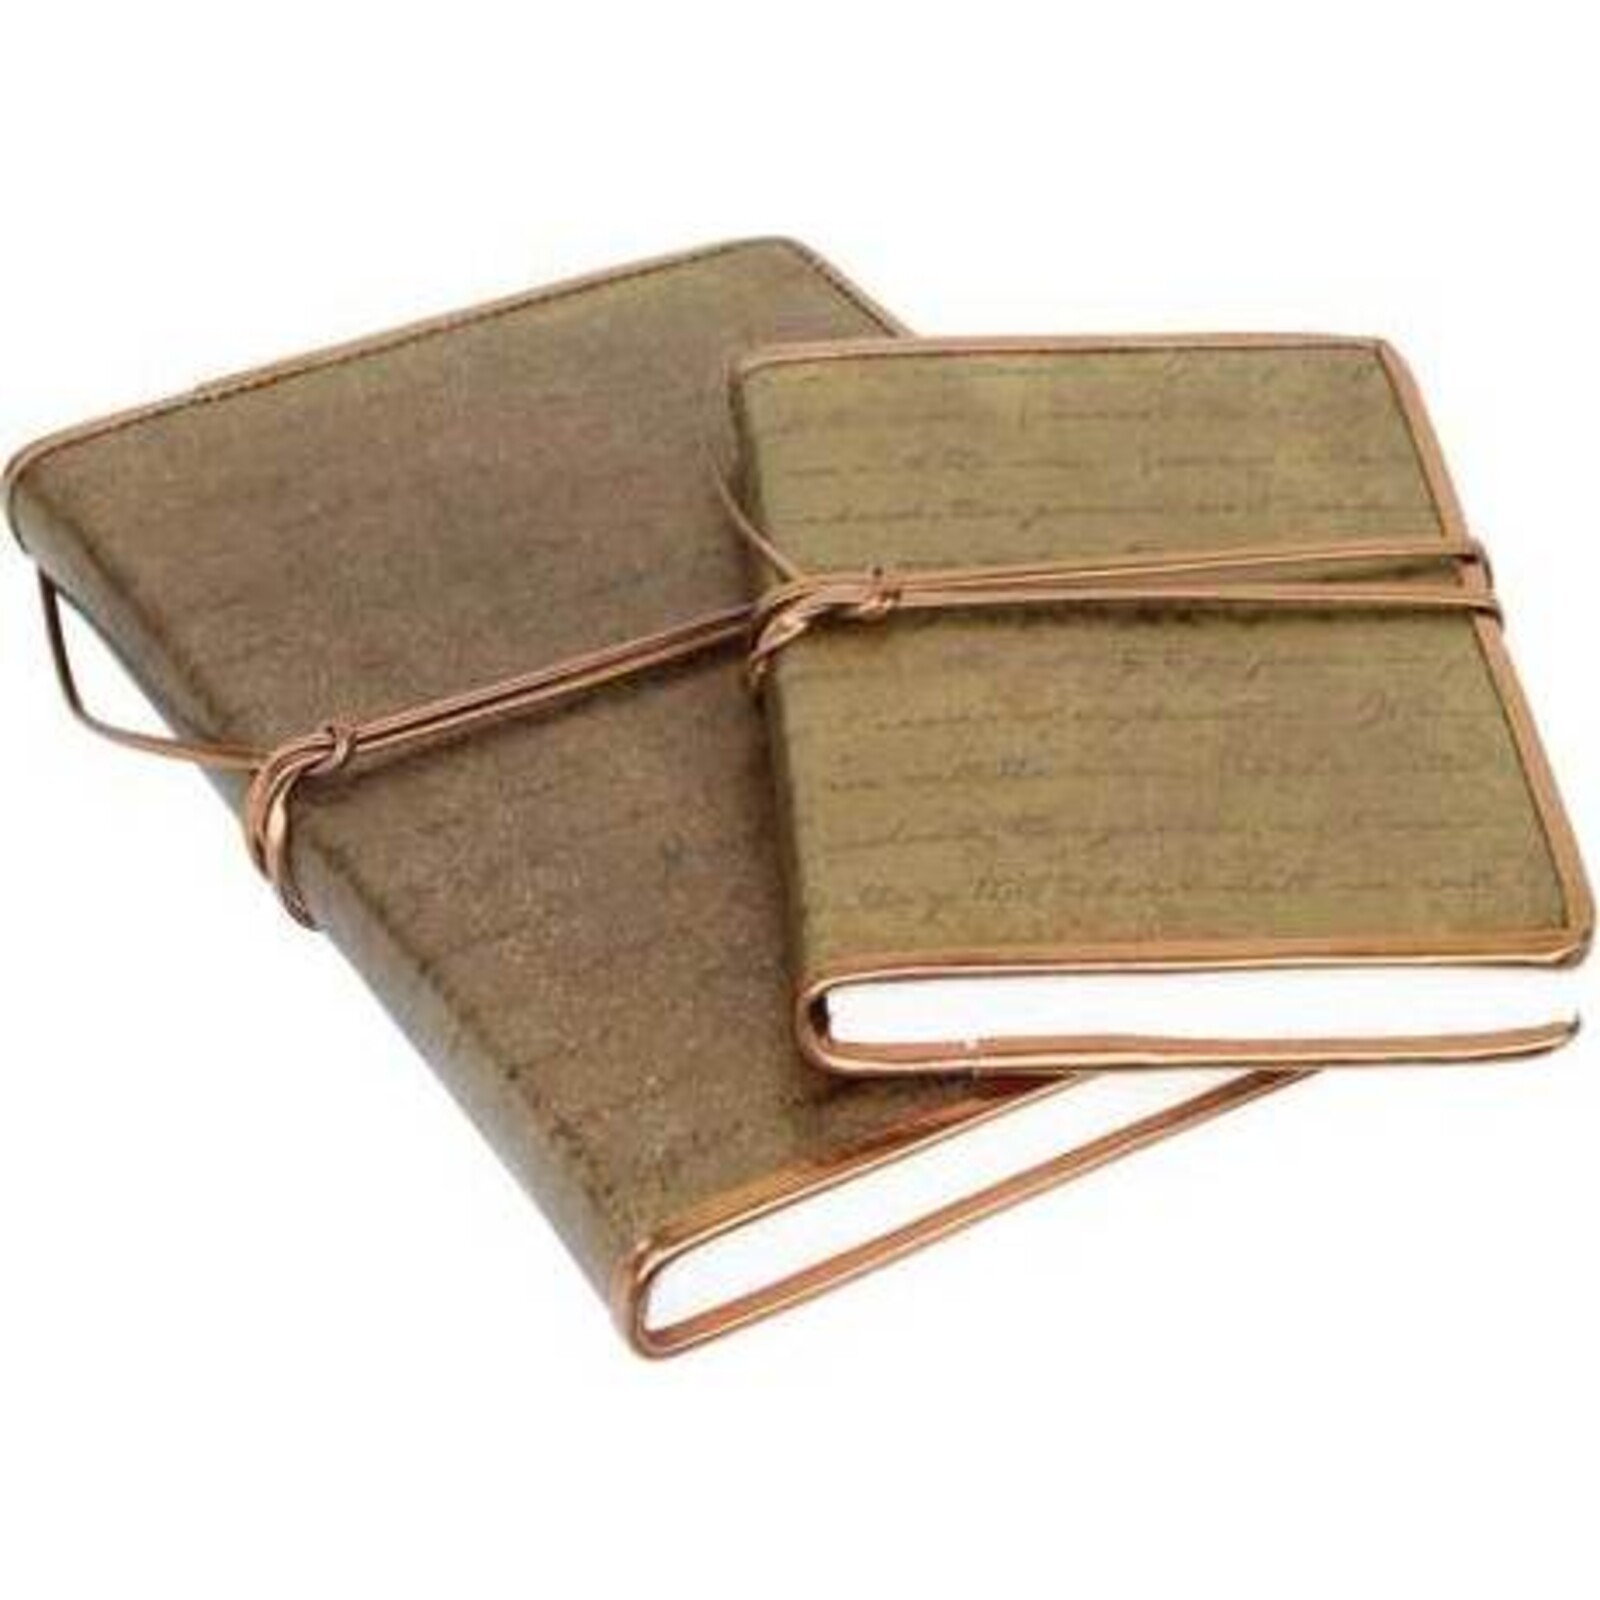 Leather Note Book Bound Dark Gold